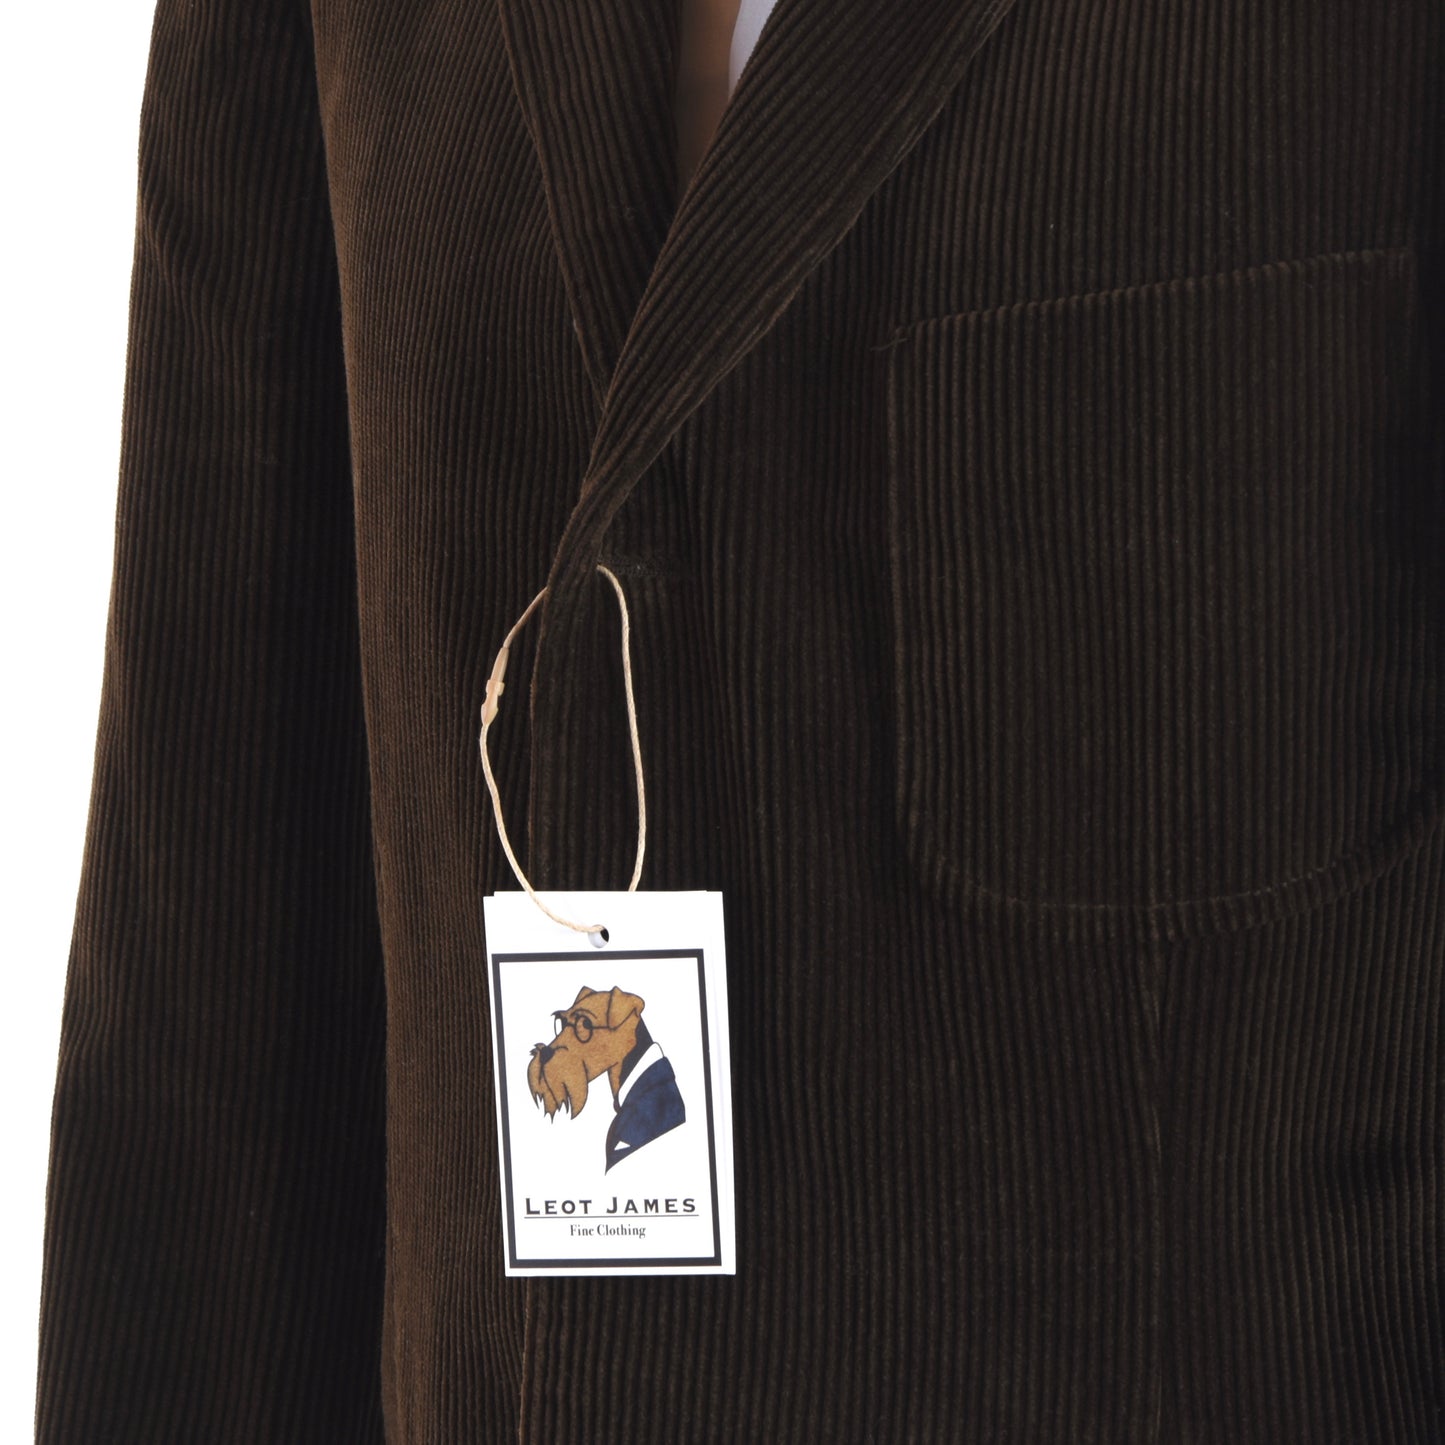 Polo Ralph Lauren Corduroy Jacket Size XL - Brown